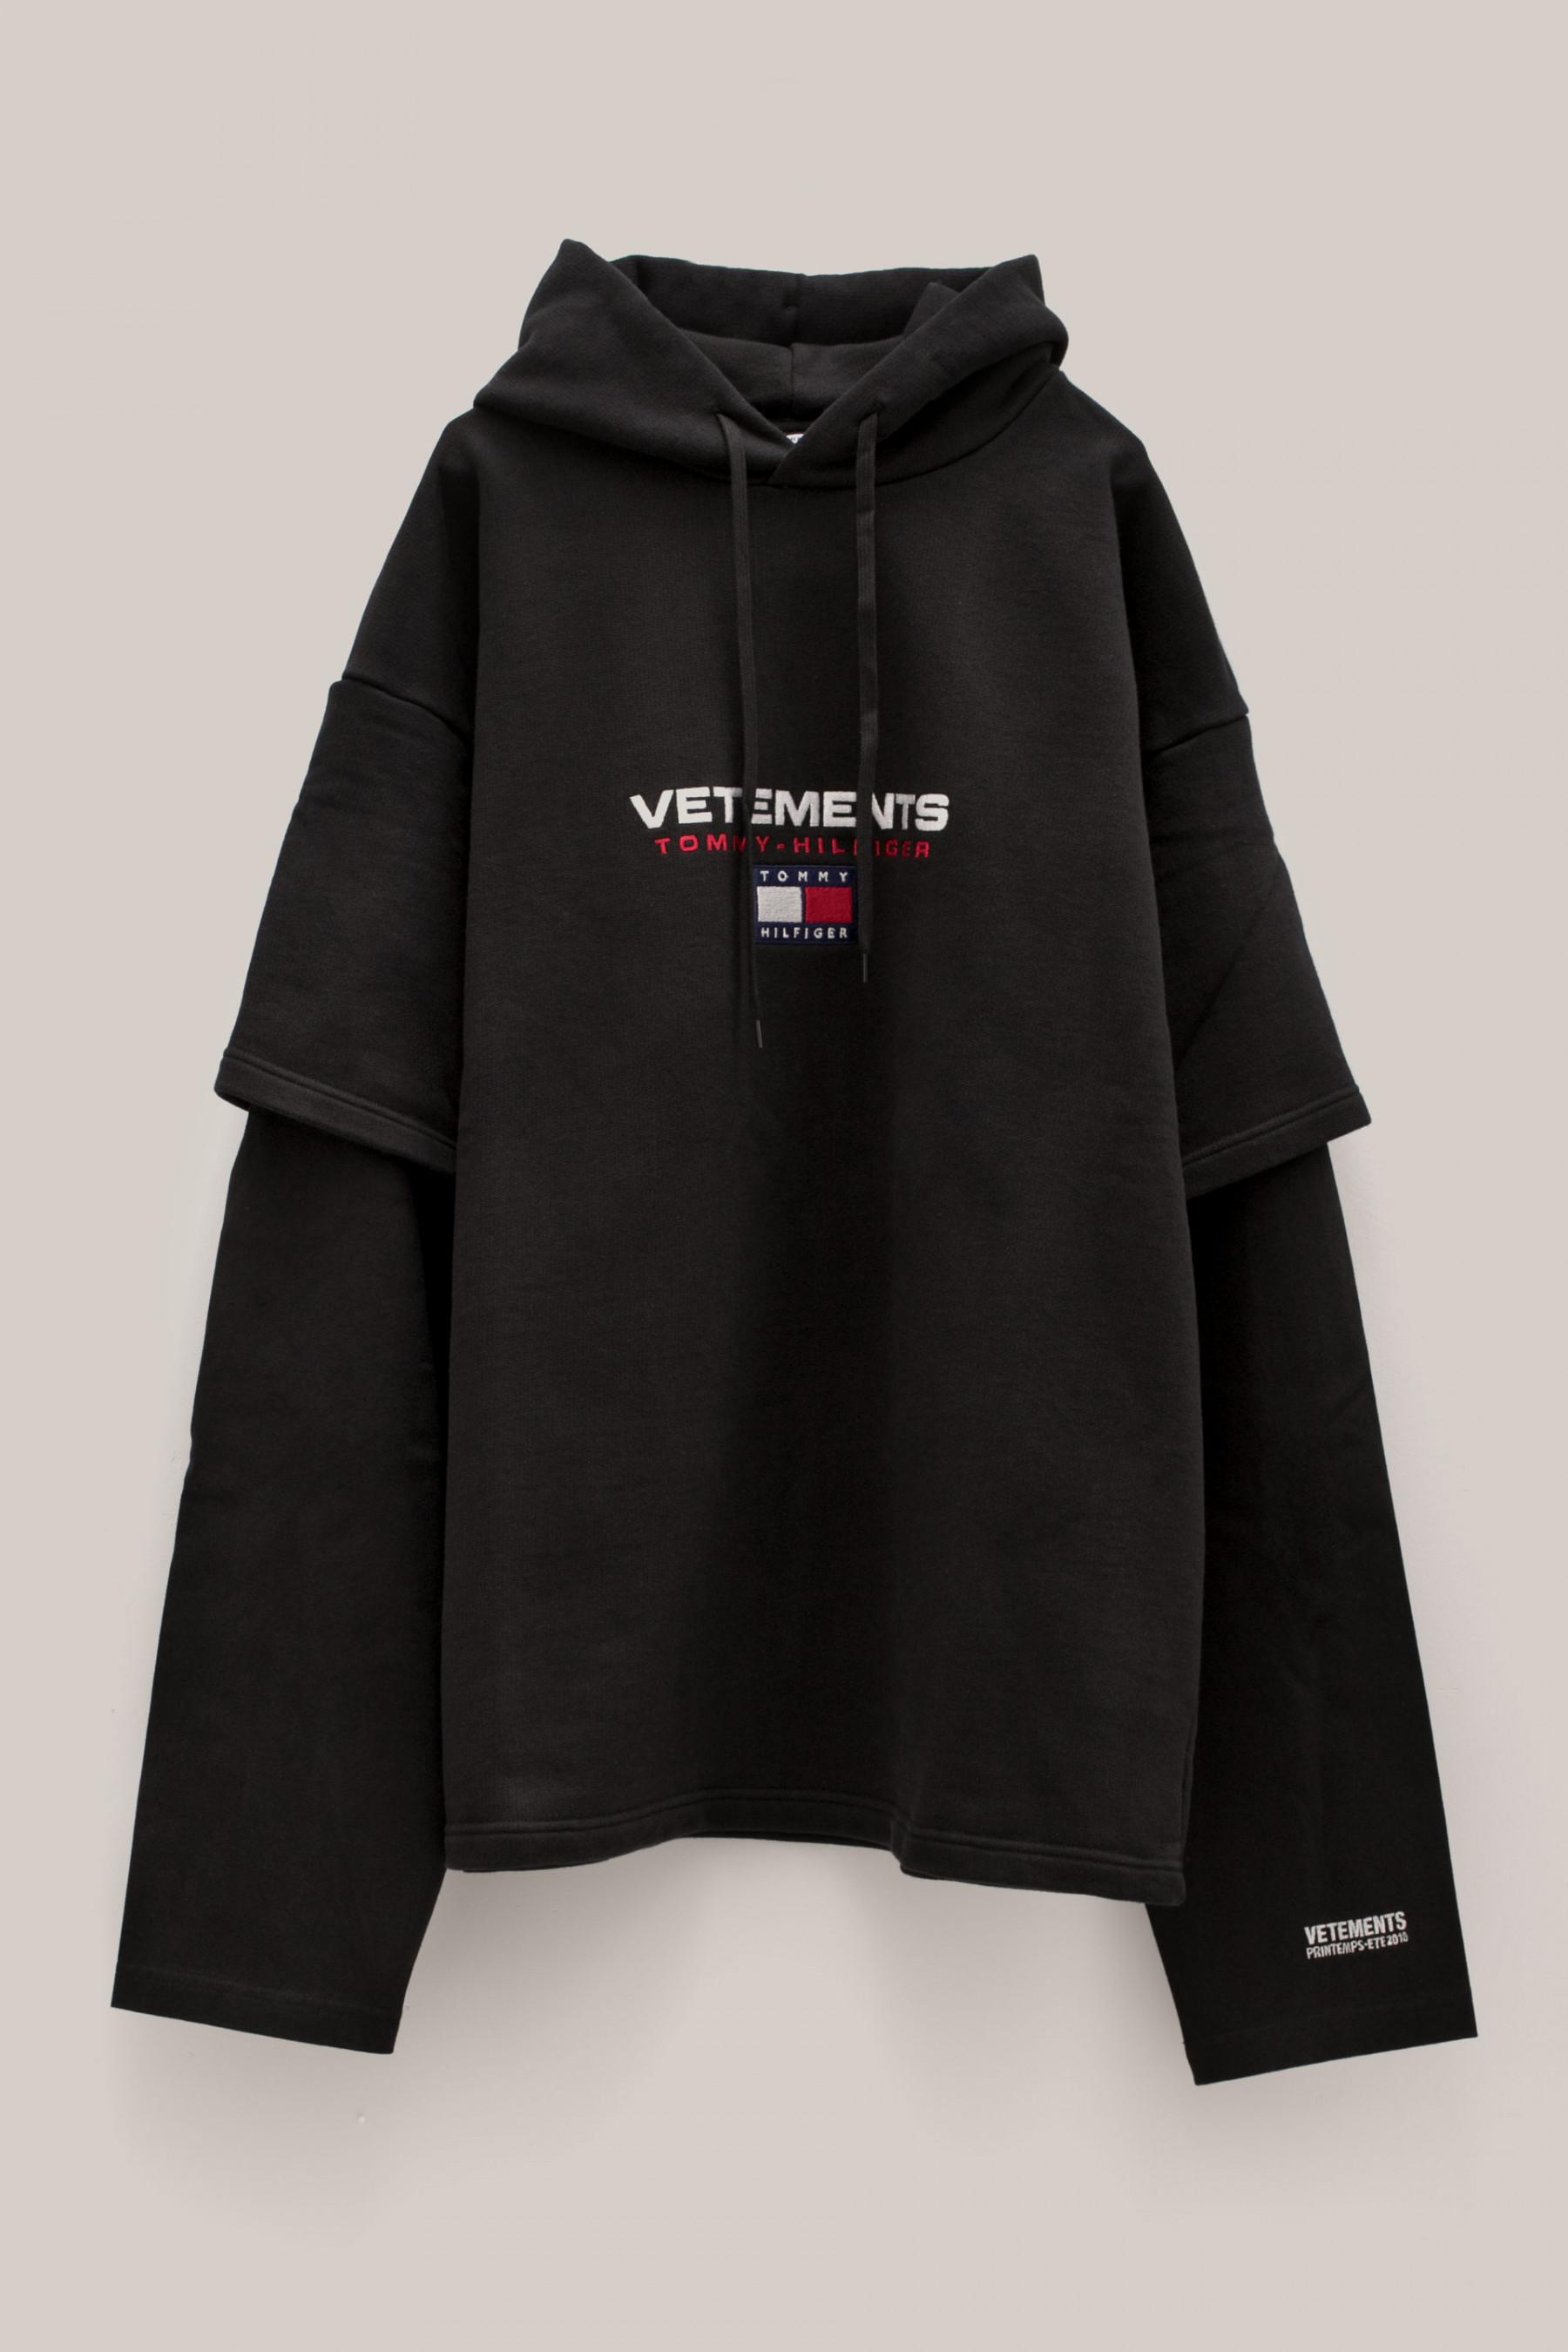 vetements x tommy hilfiger hoodie black